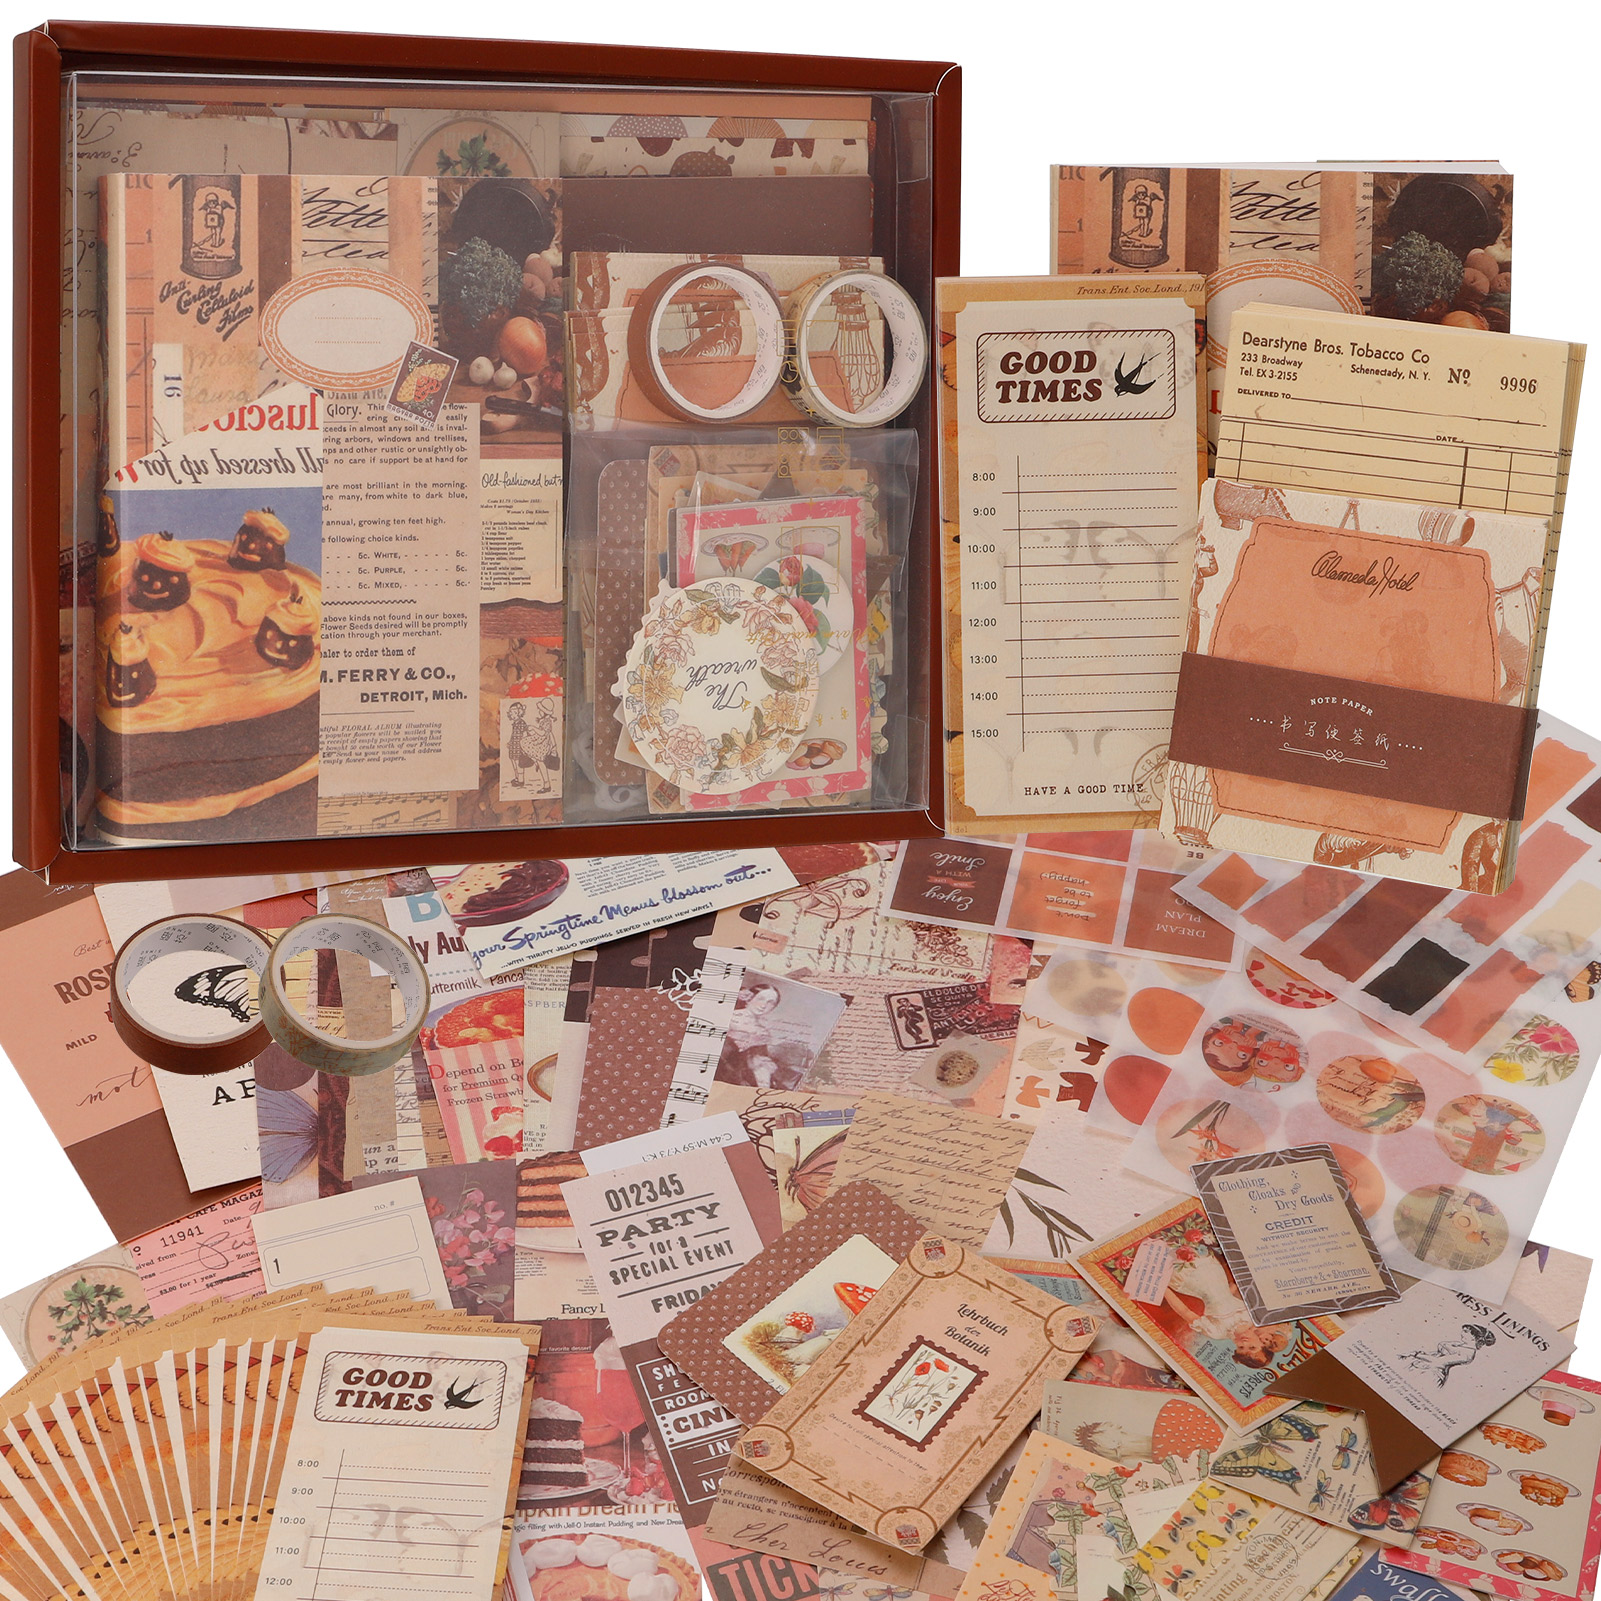 BUBABOX Vintage Scrapbook Kit, Aesthetic Scrapbooking Supplies Kit